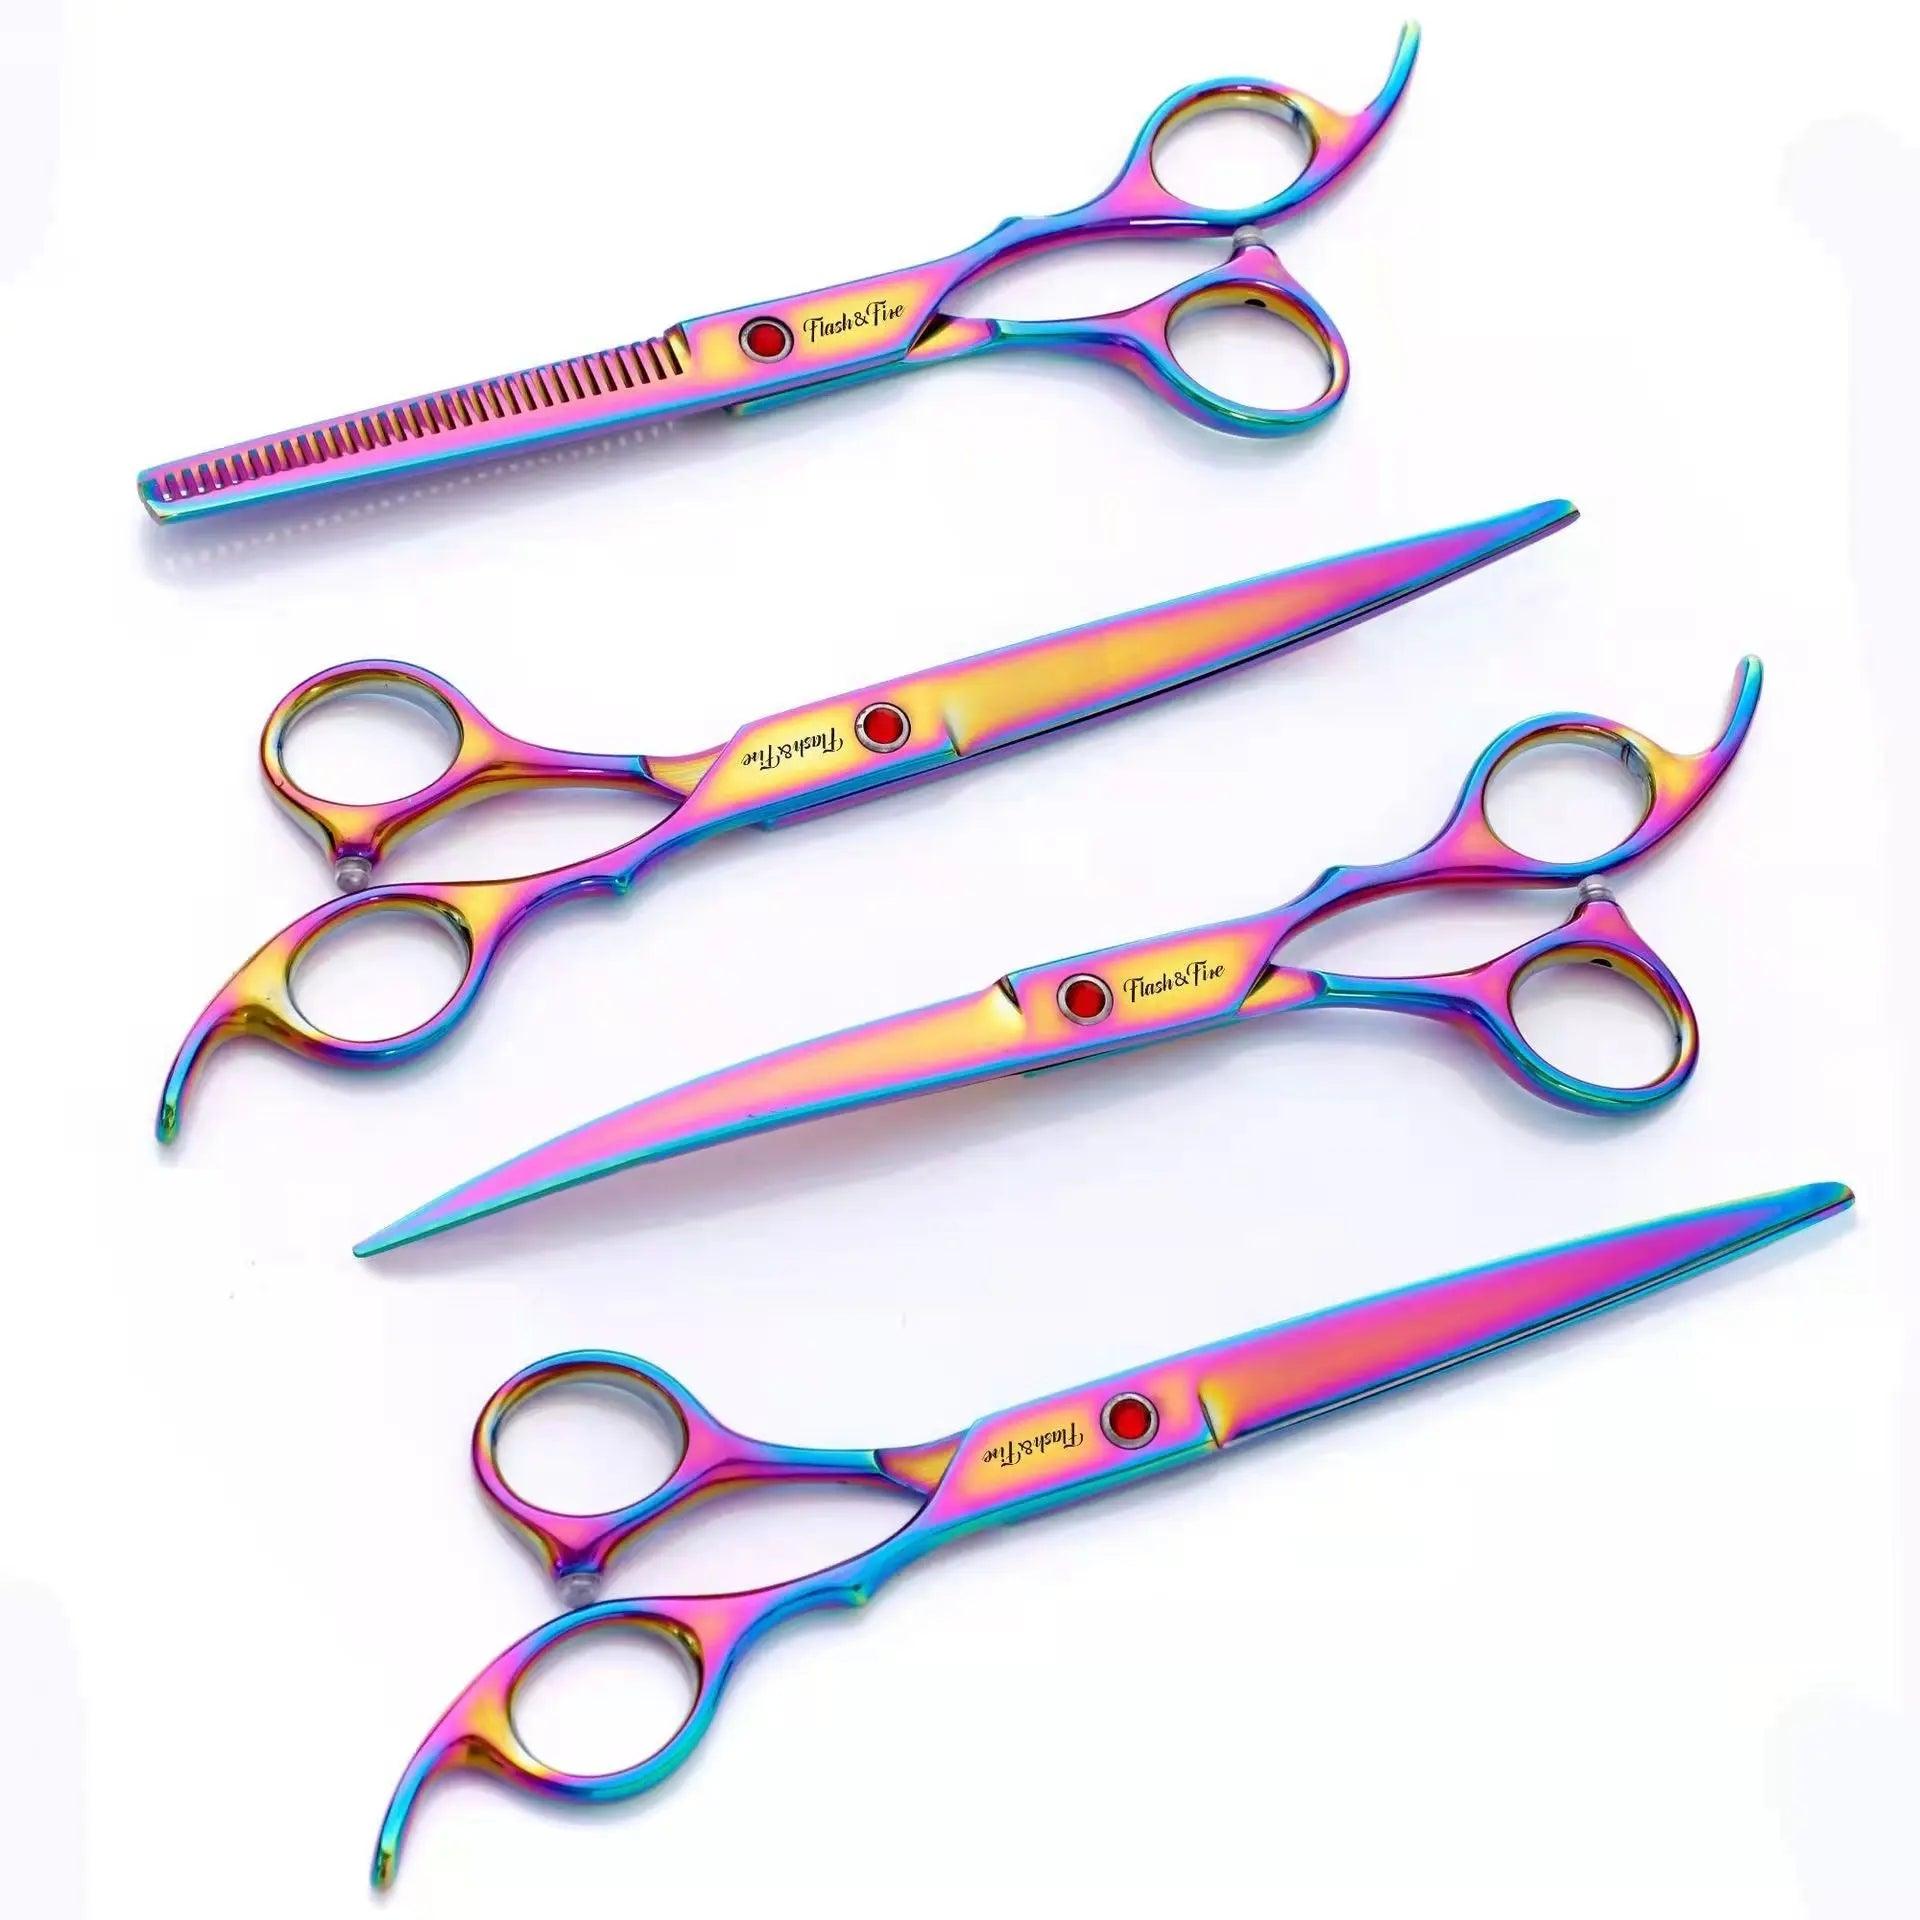  pet grooming scissors cashymart